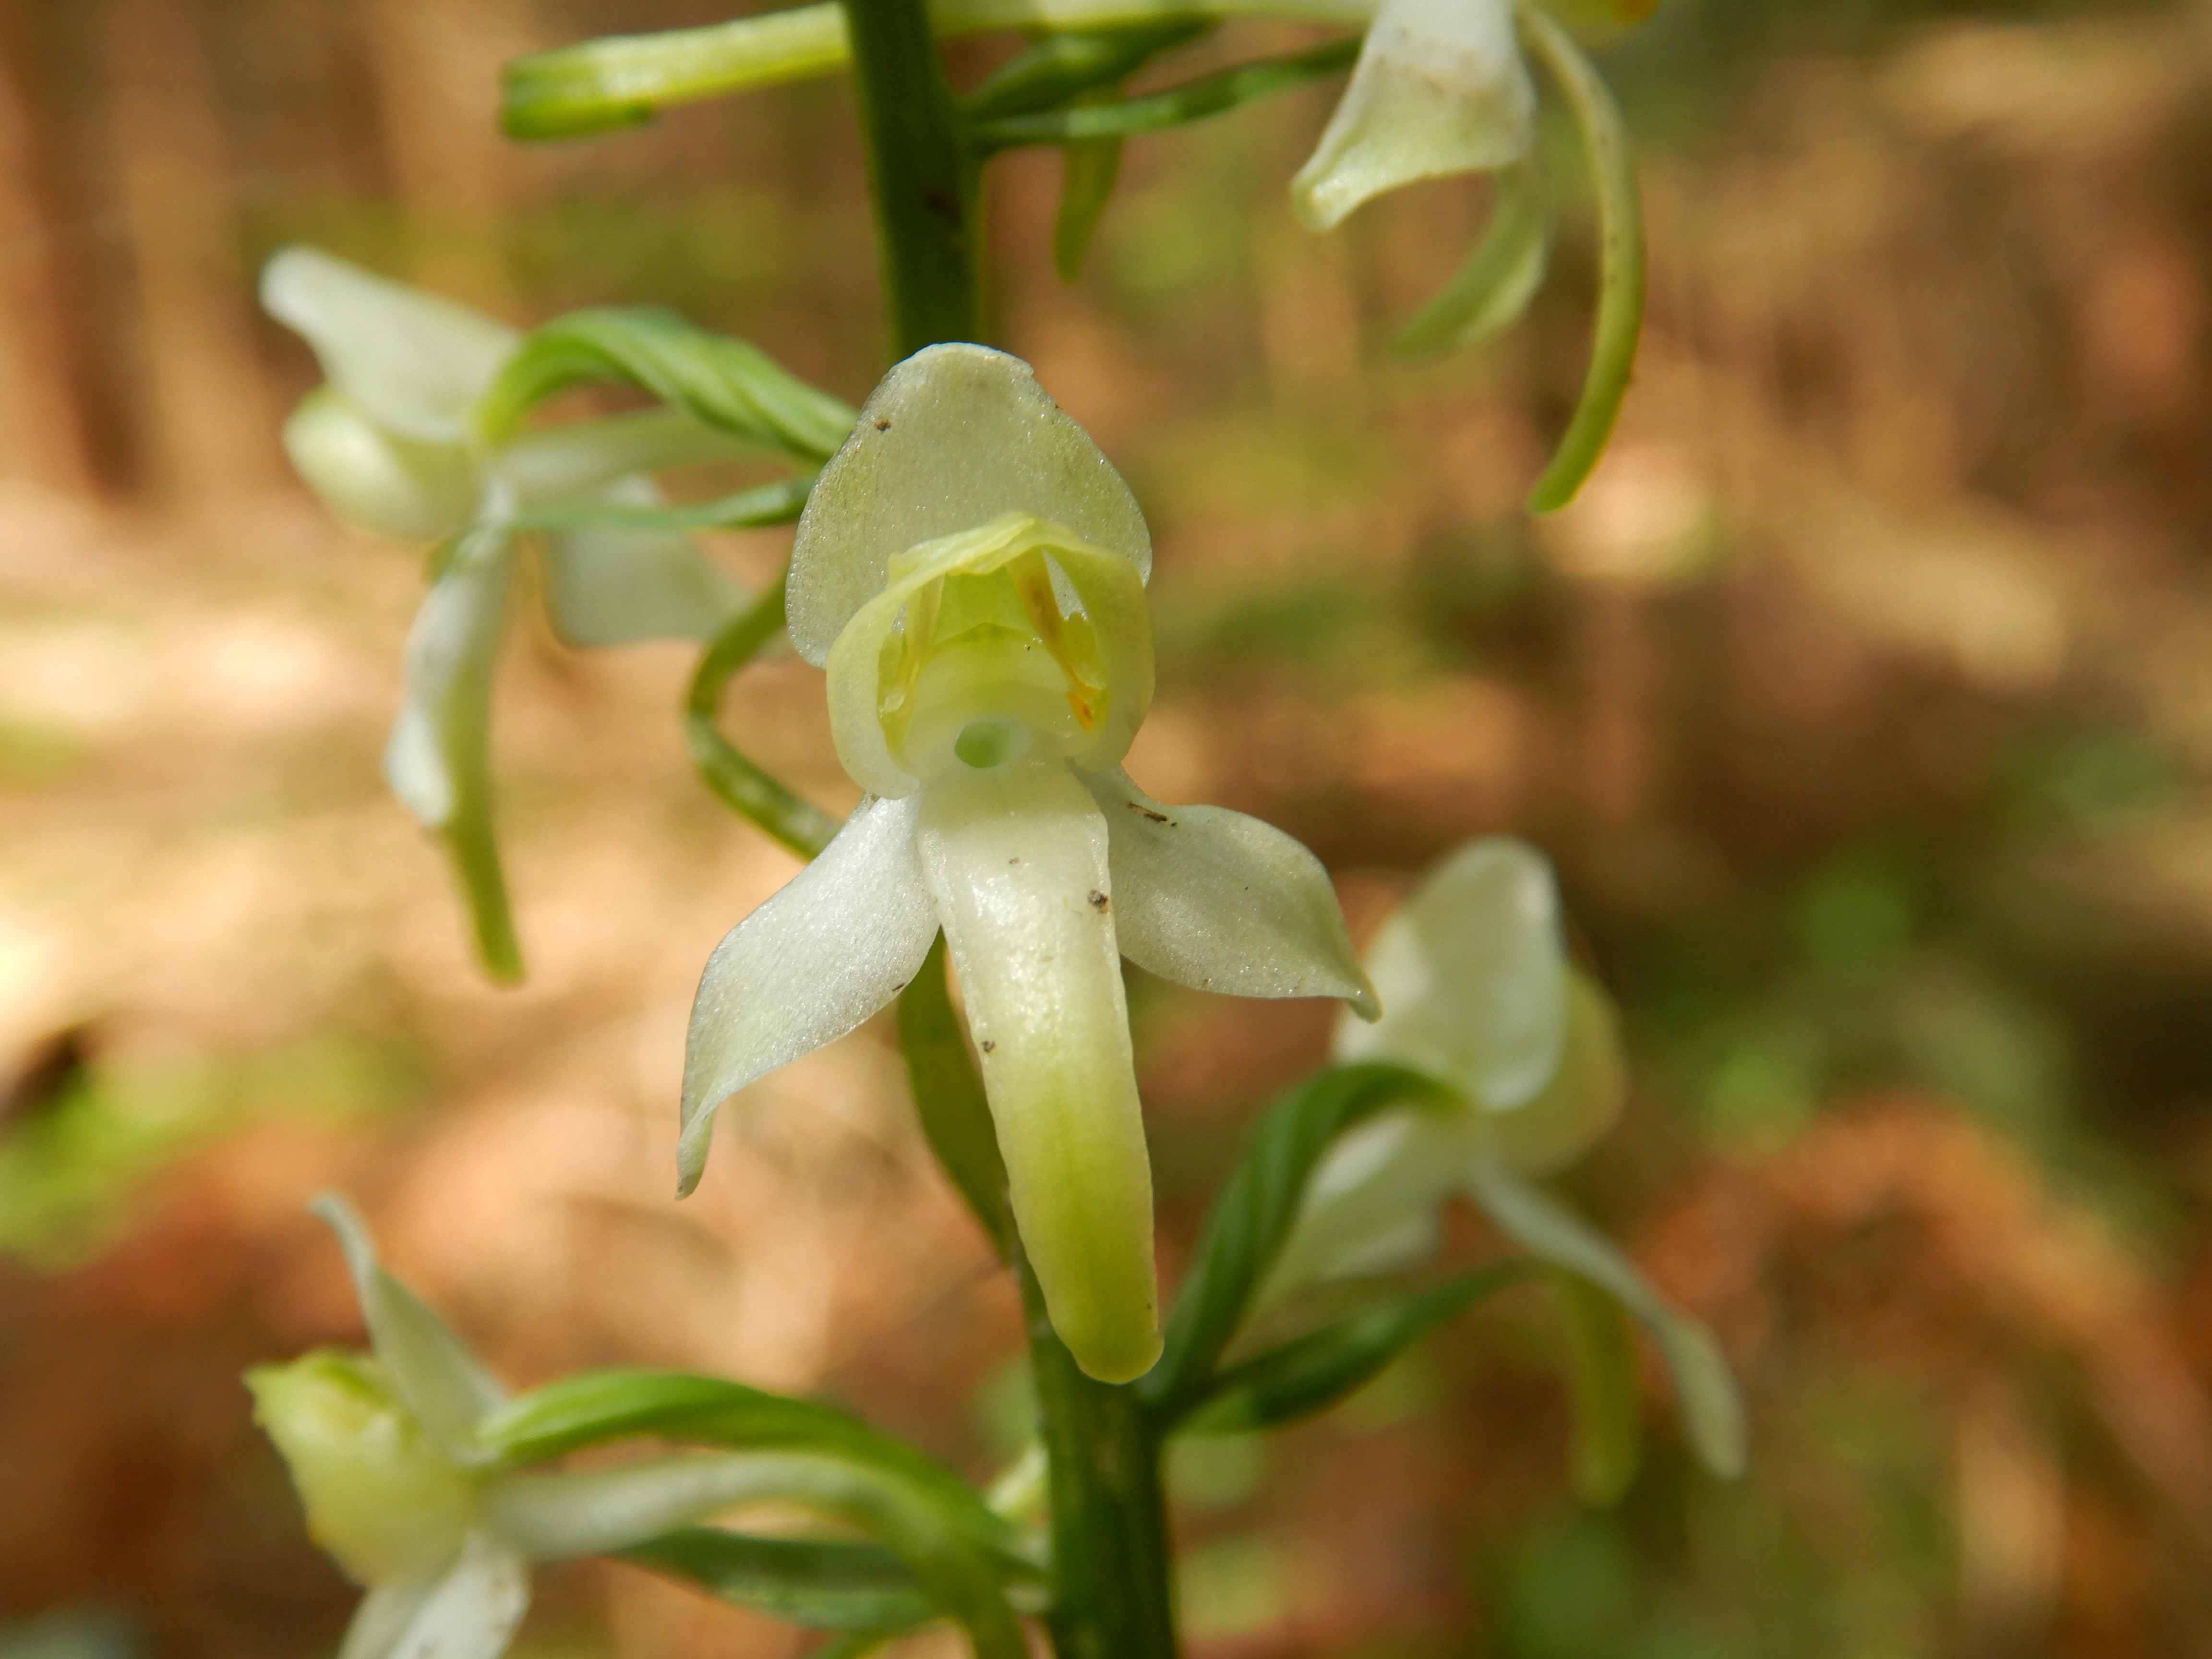 Vemeník zelenavý (Platanthera chlorantha), ohrožená orchidej naší květeny.